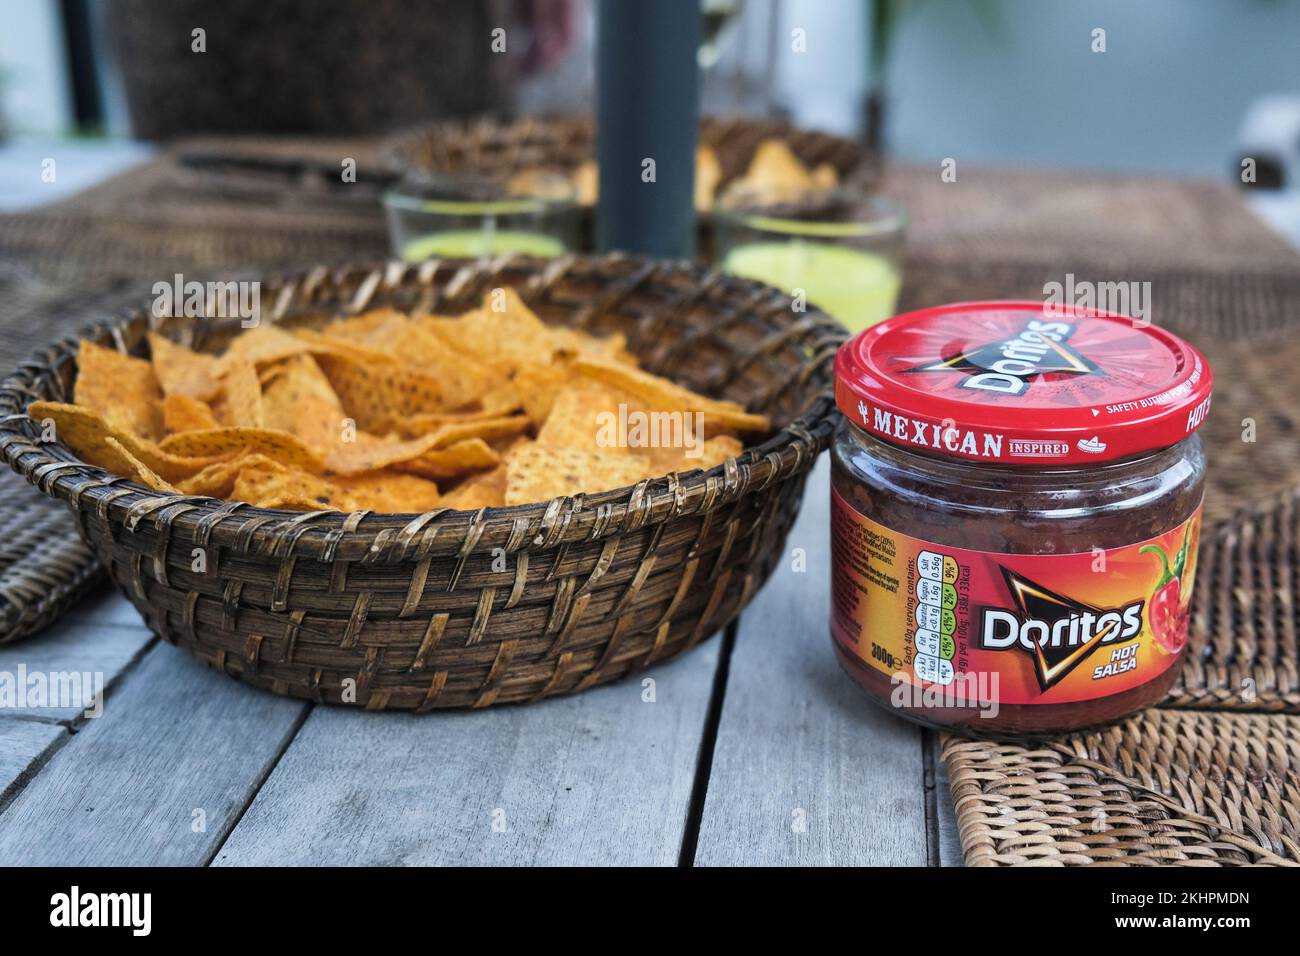 Ein Glas Doritos mexikanische Salsa und ein Korb Doritostortilla Chips auf einem Tisch. Stockfoto